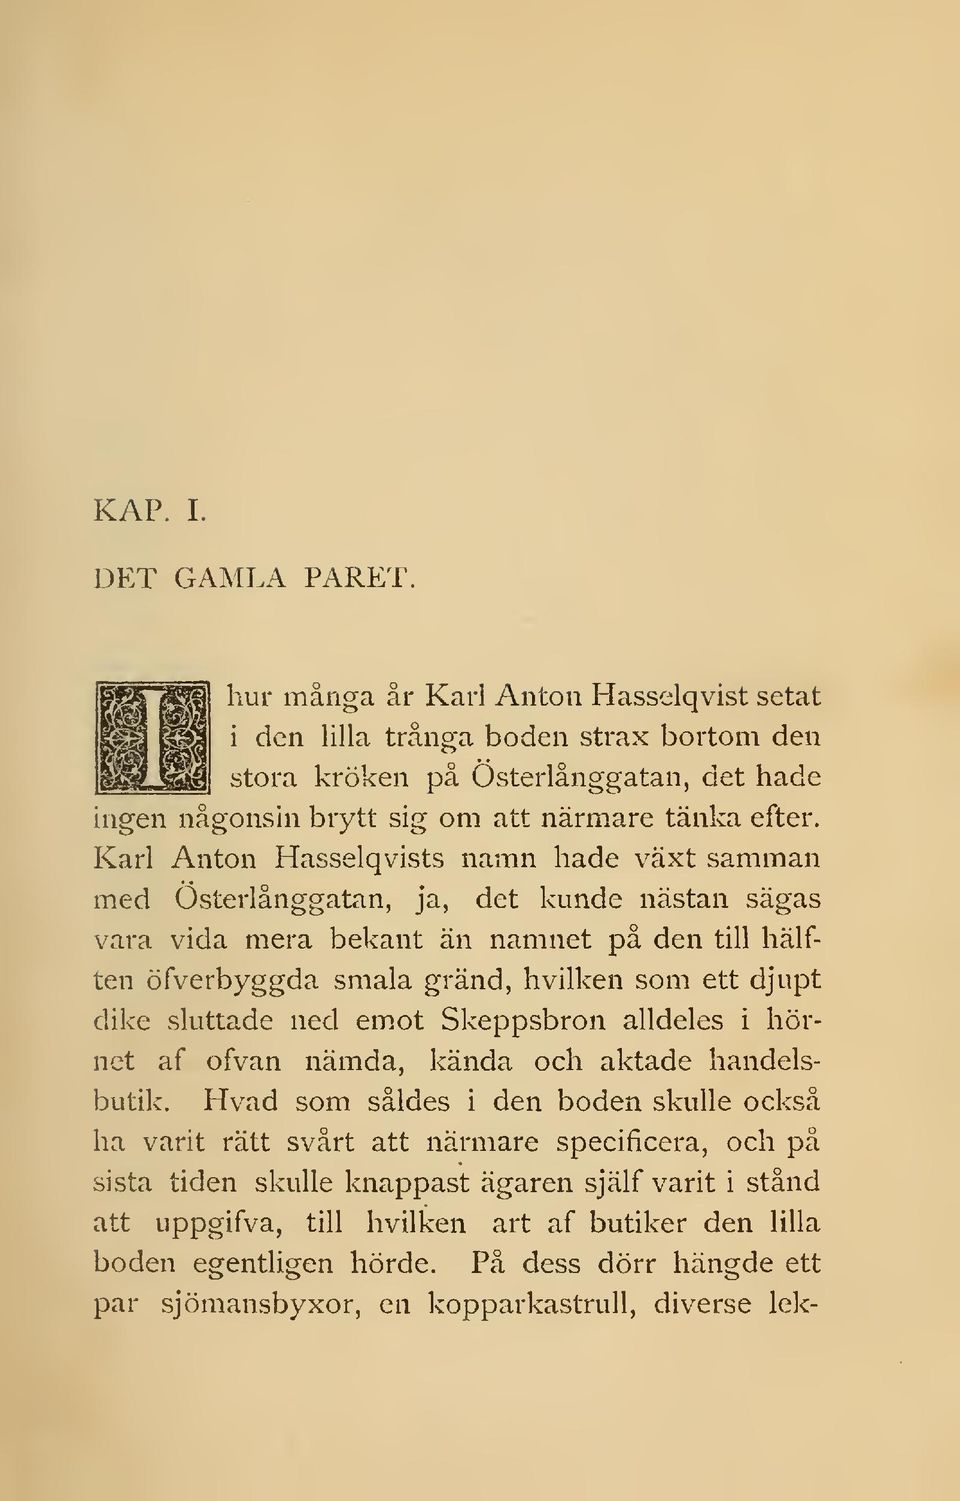 Karl Anton Hasselqvists namn hade växt samman m>ed Osterlånggatan, ja, det kunde nästan sägas vara vida mera bekant än namnet på den till hälften öfverbyggda smala gränd, hvilken som ett djupt dike